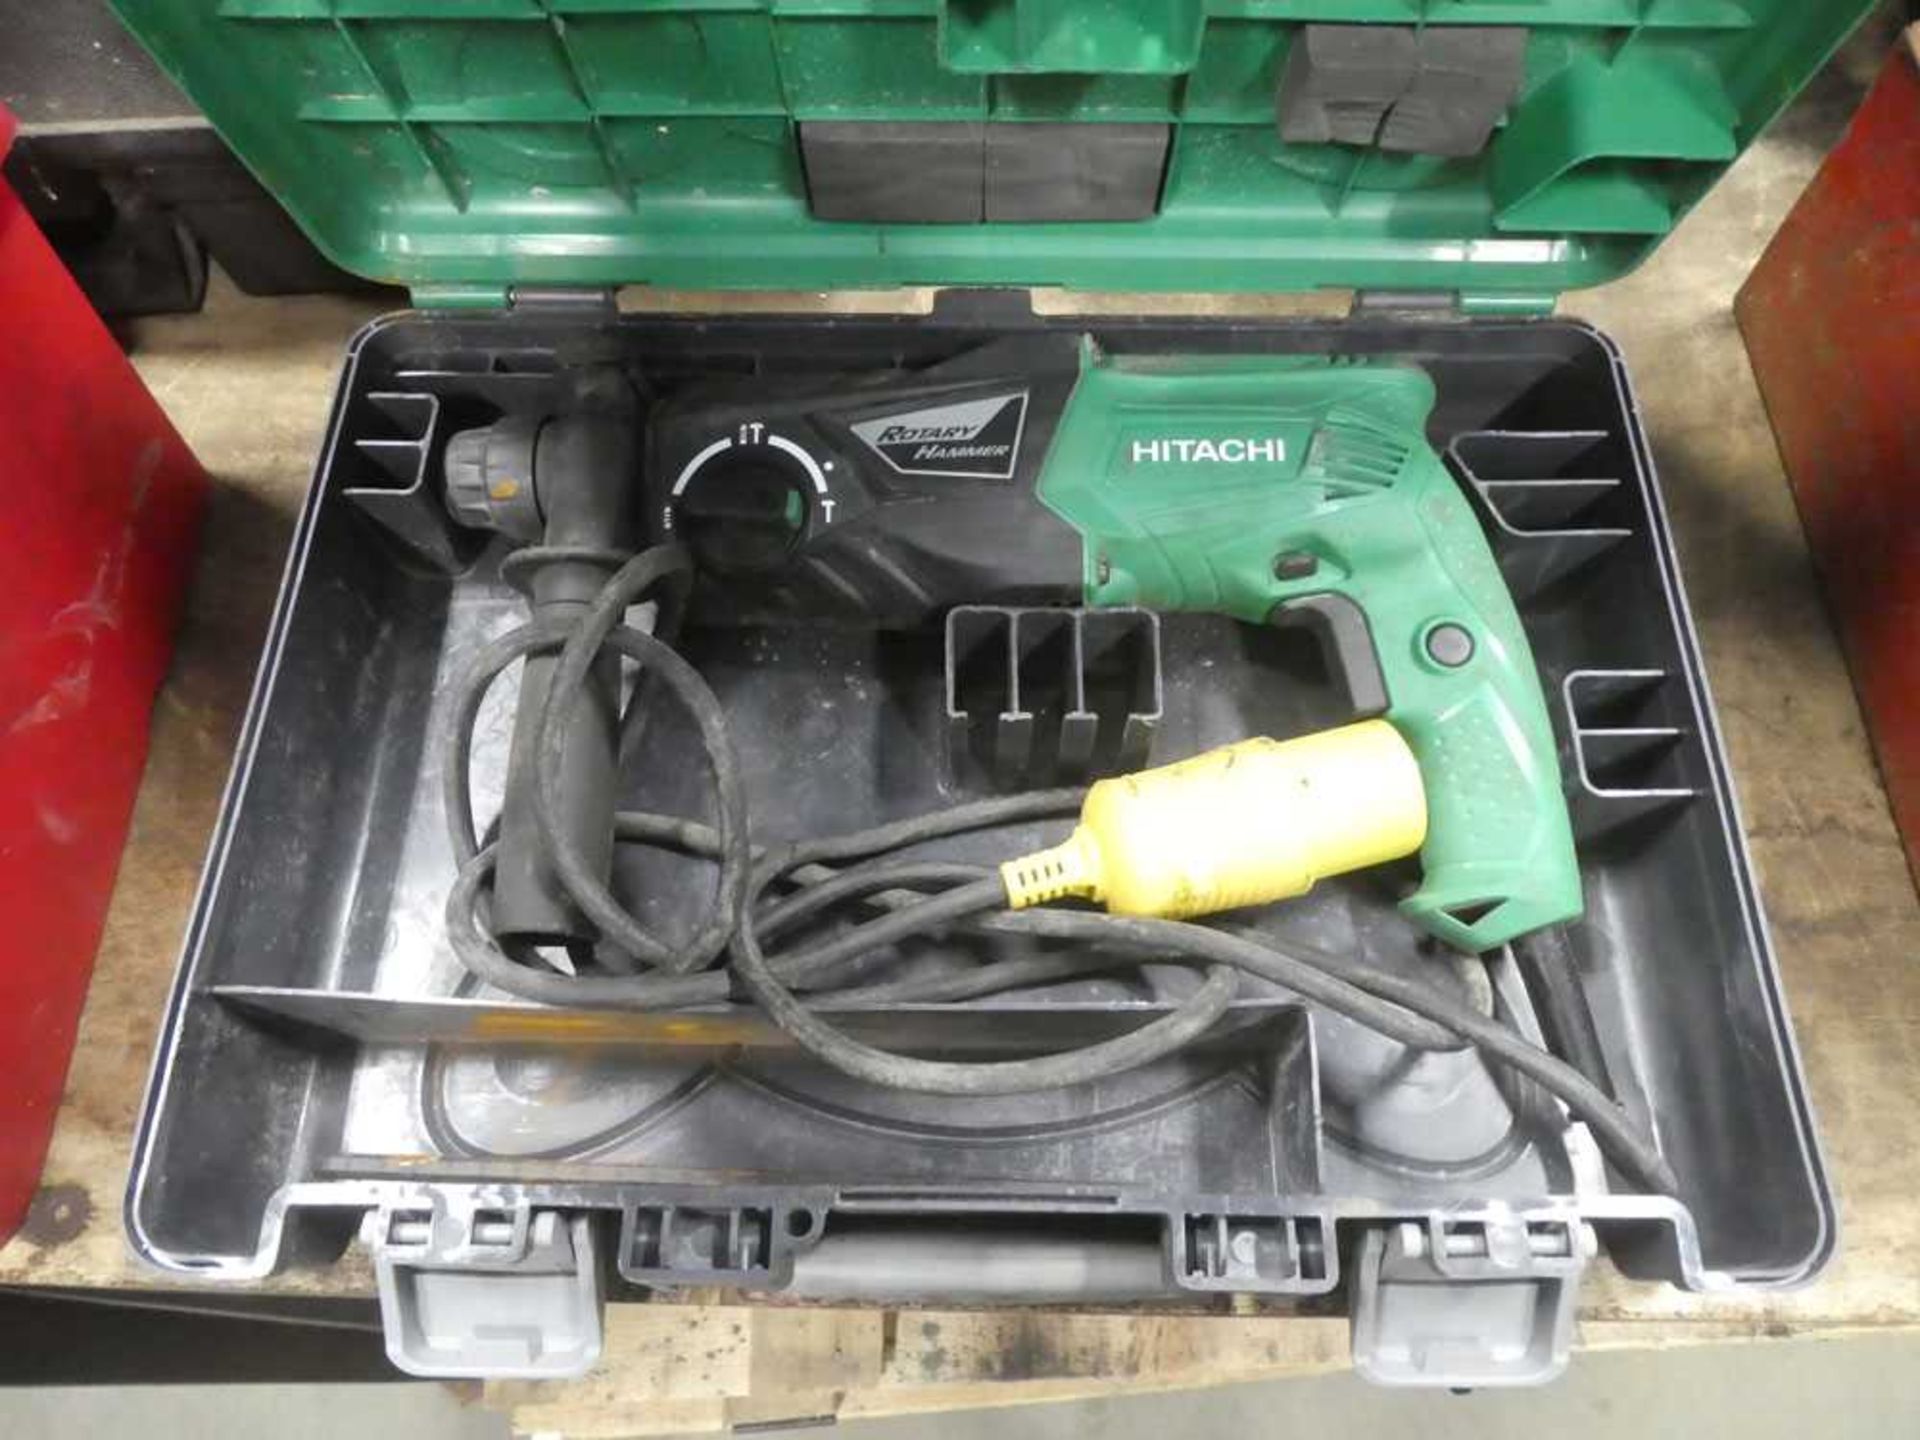 Hitachi 110v hammer drill in case